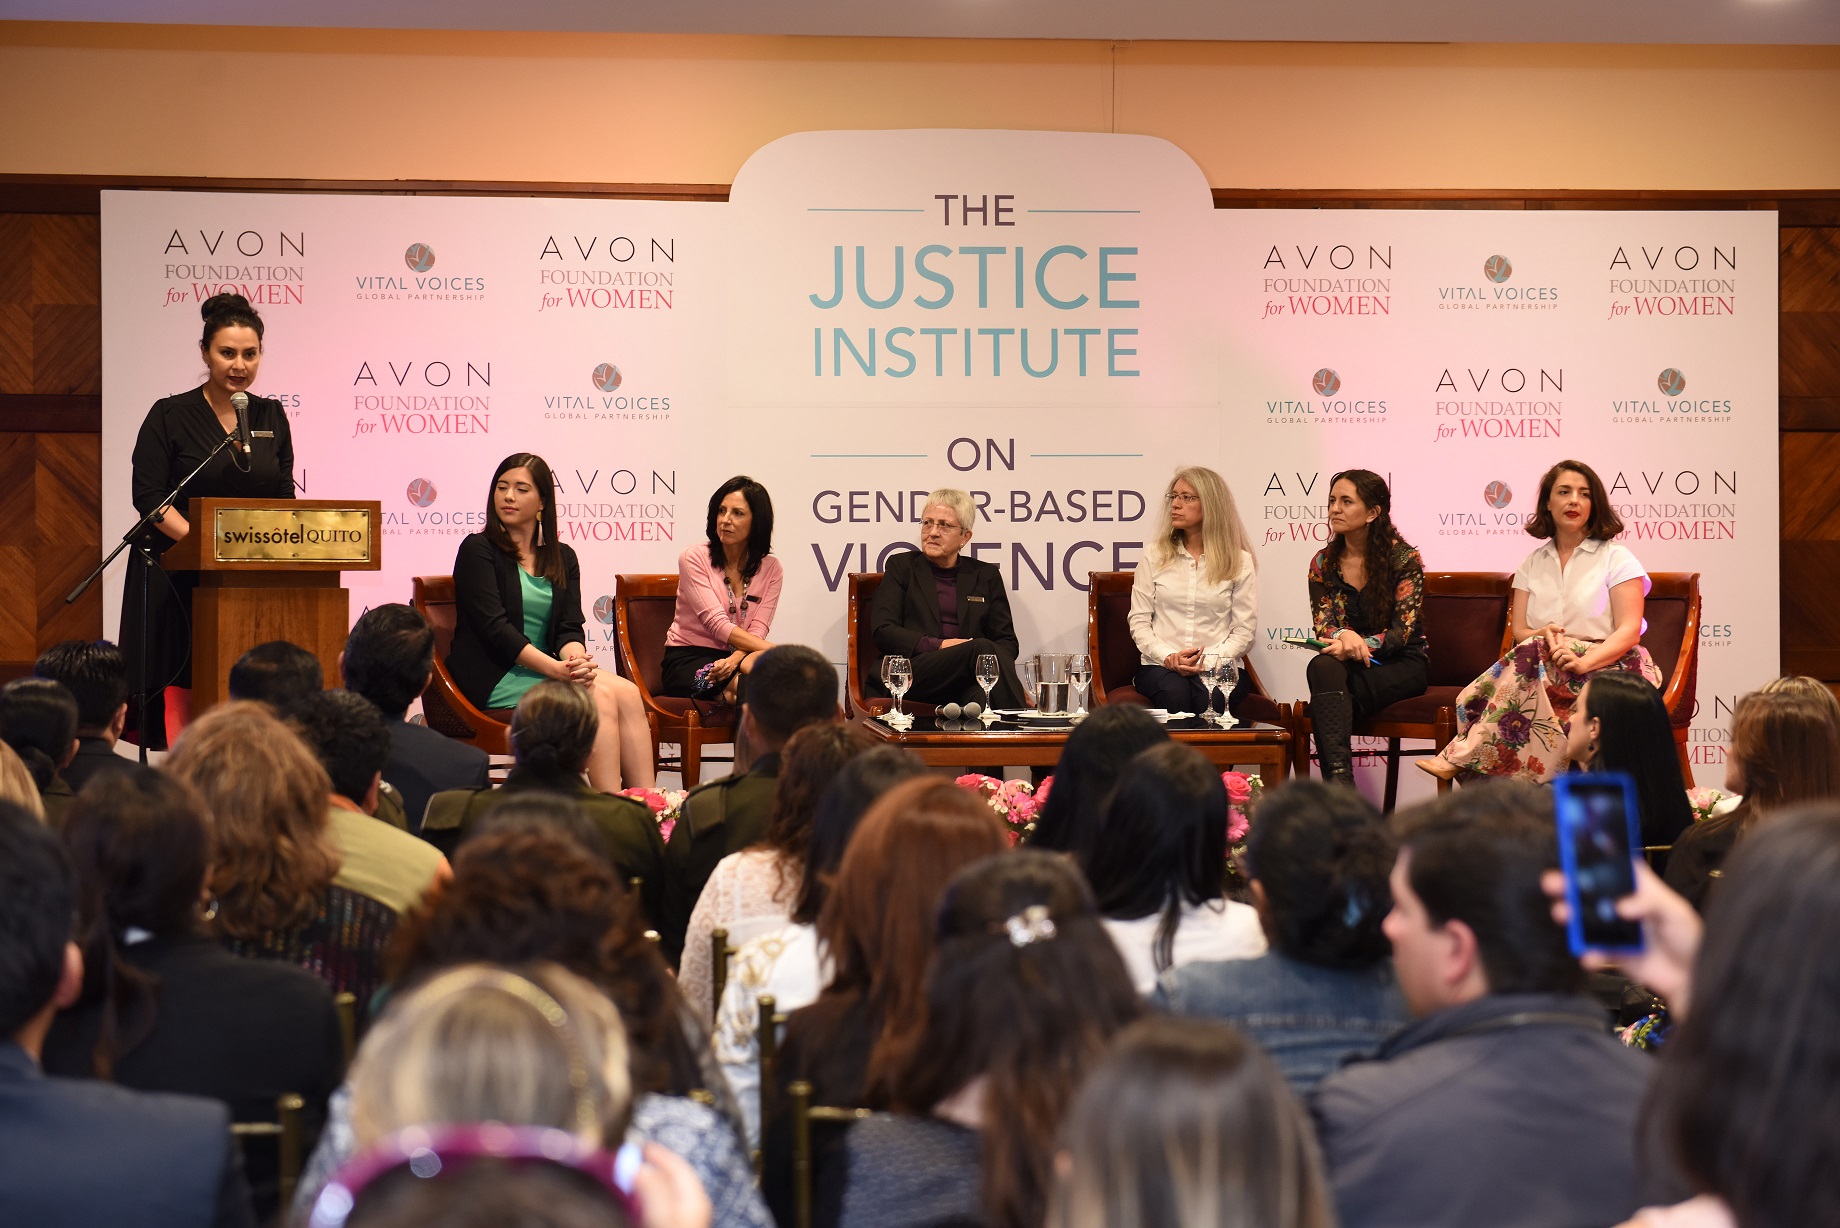 22nd Justice Institute on gender-based violence in Ecuador